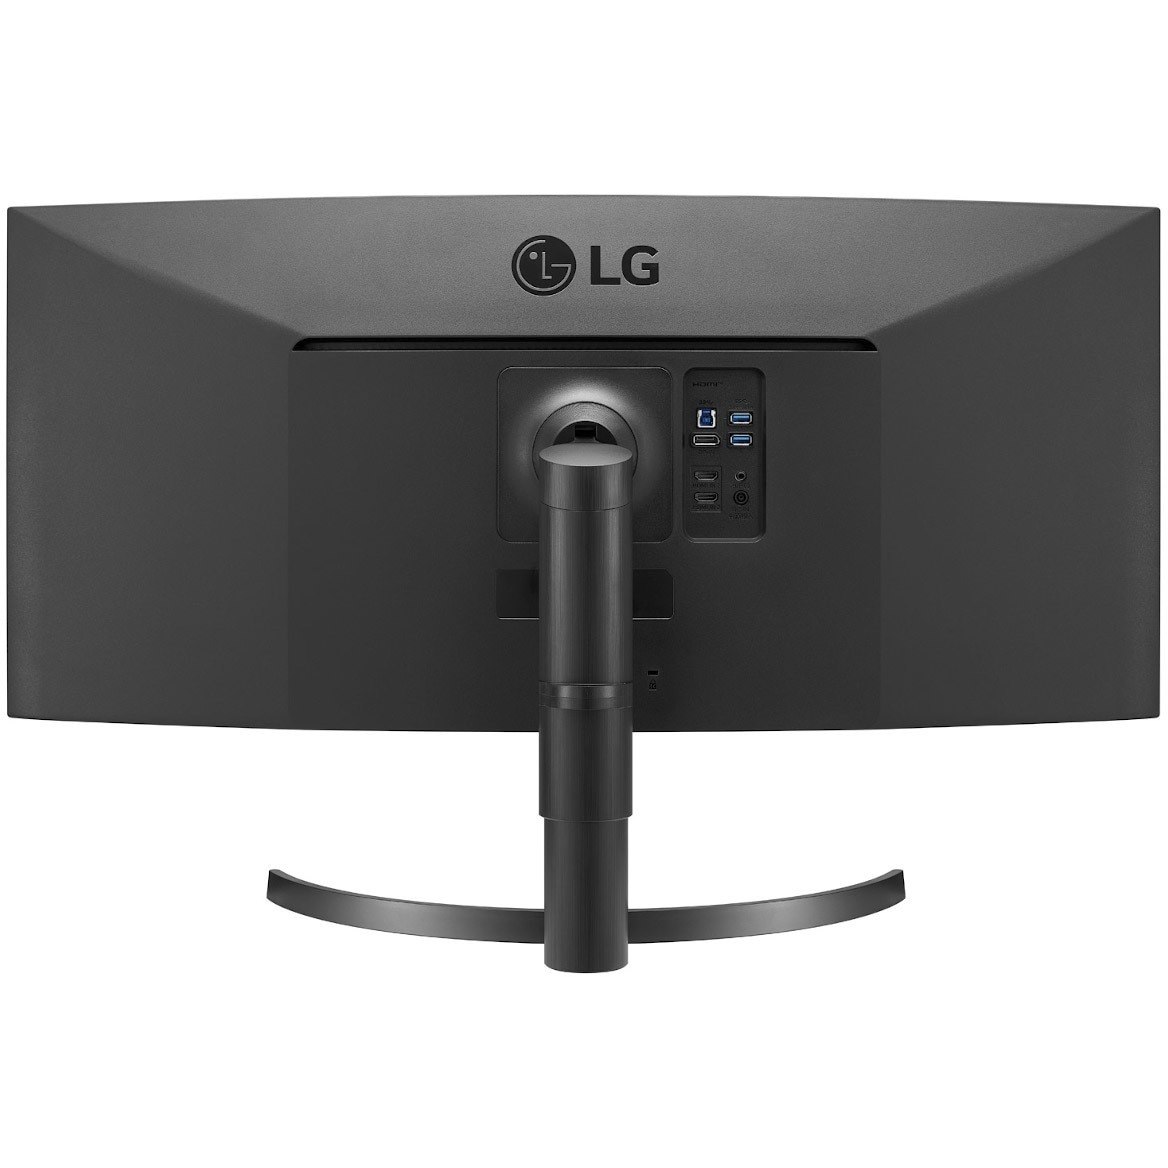 LG Ultrawide 35WN65C-B 88.9 cm (35") WQHD Curved Screen LED Gaming LCD Monitor - 21:9